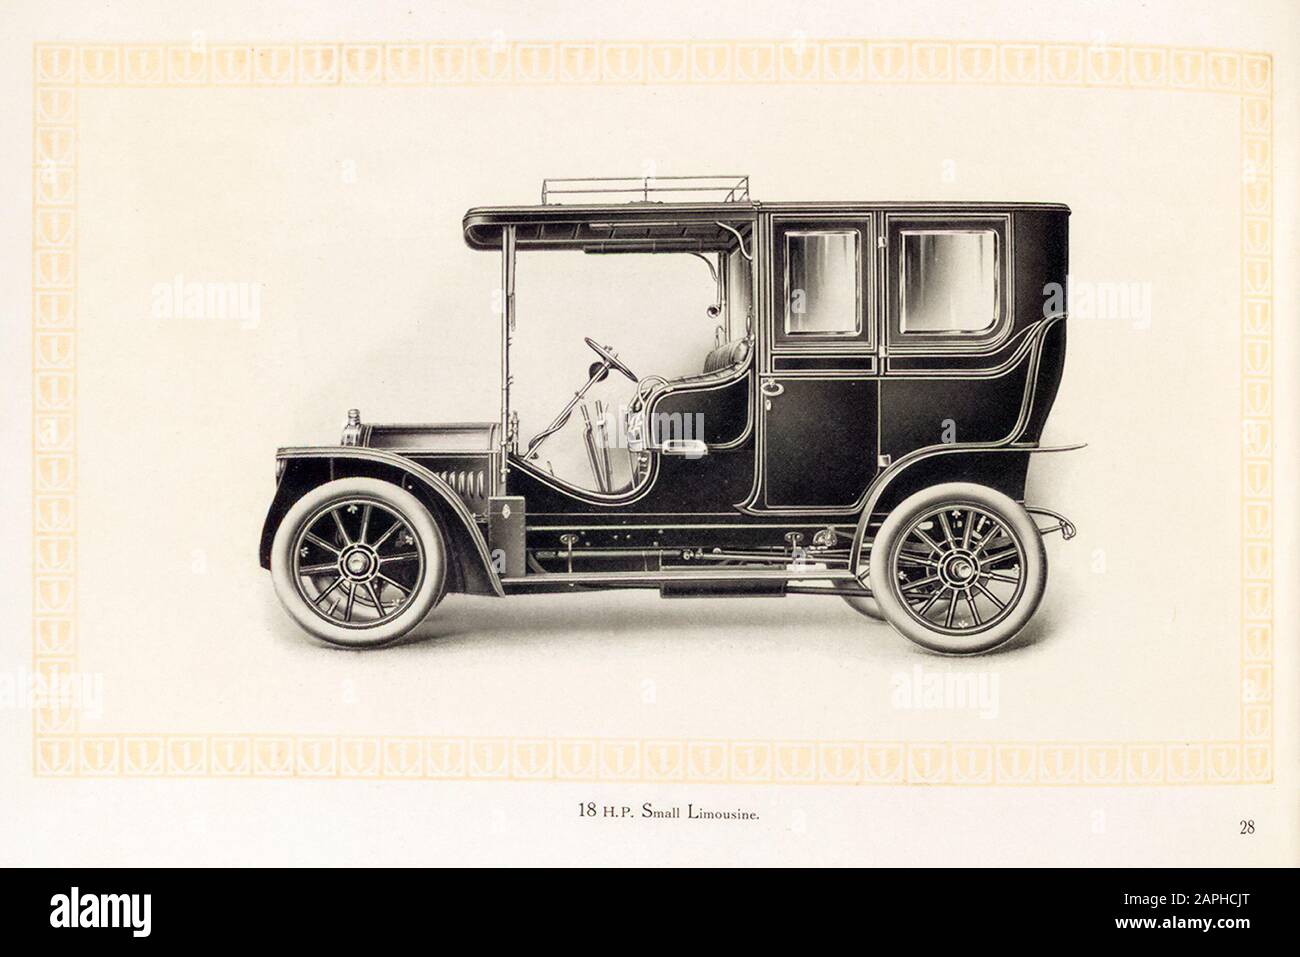 Benz Motorwagen, 18 ps Kleinlimousine Vintage Auto aus dem Benz & Co Handelskatalog, Illustration 1909 Stockfoto